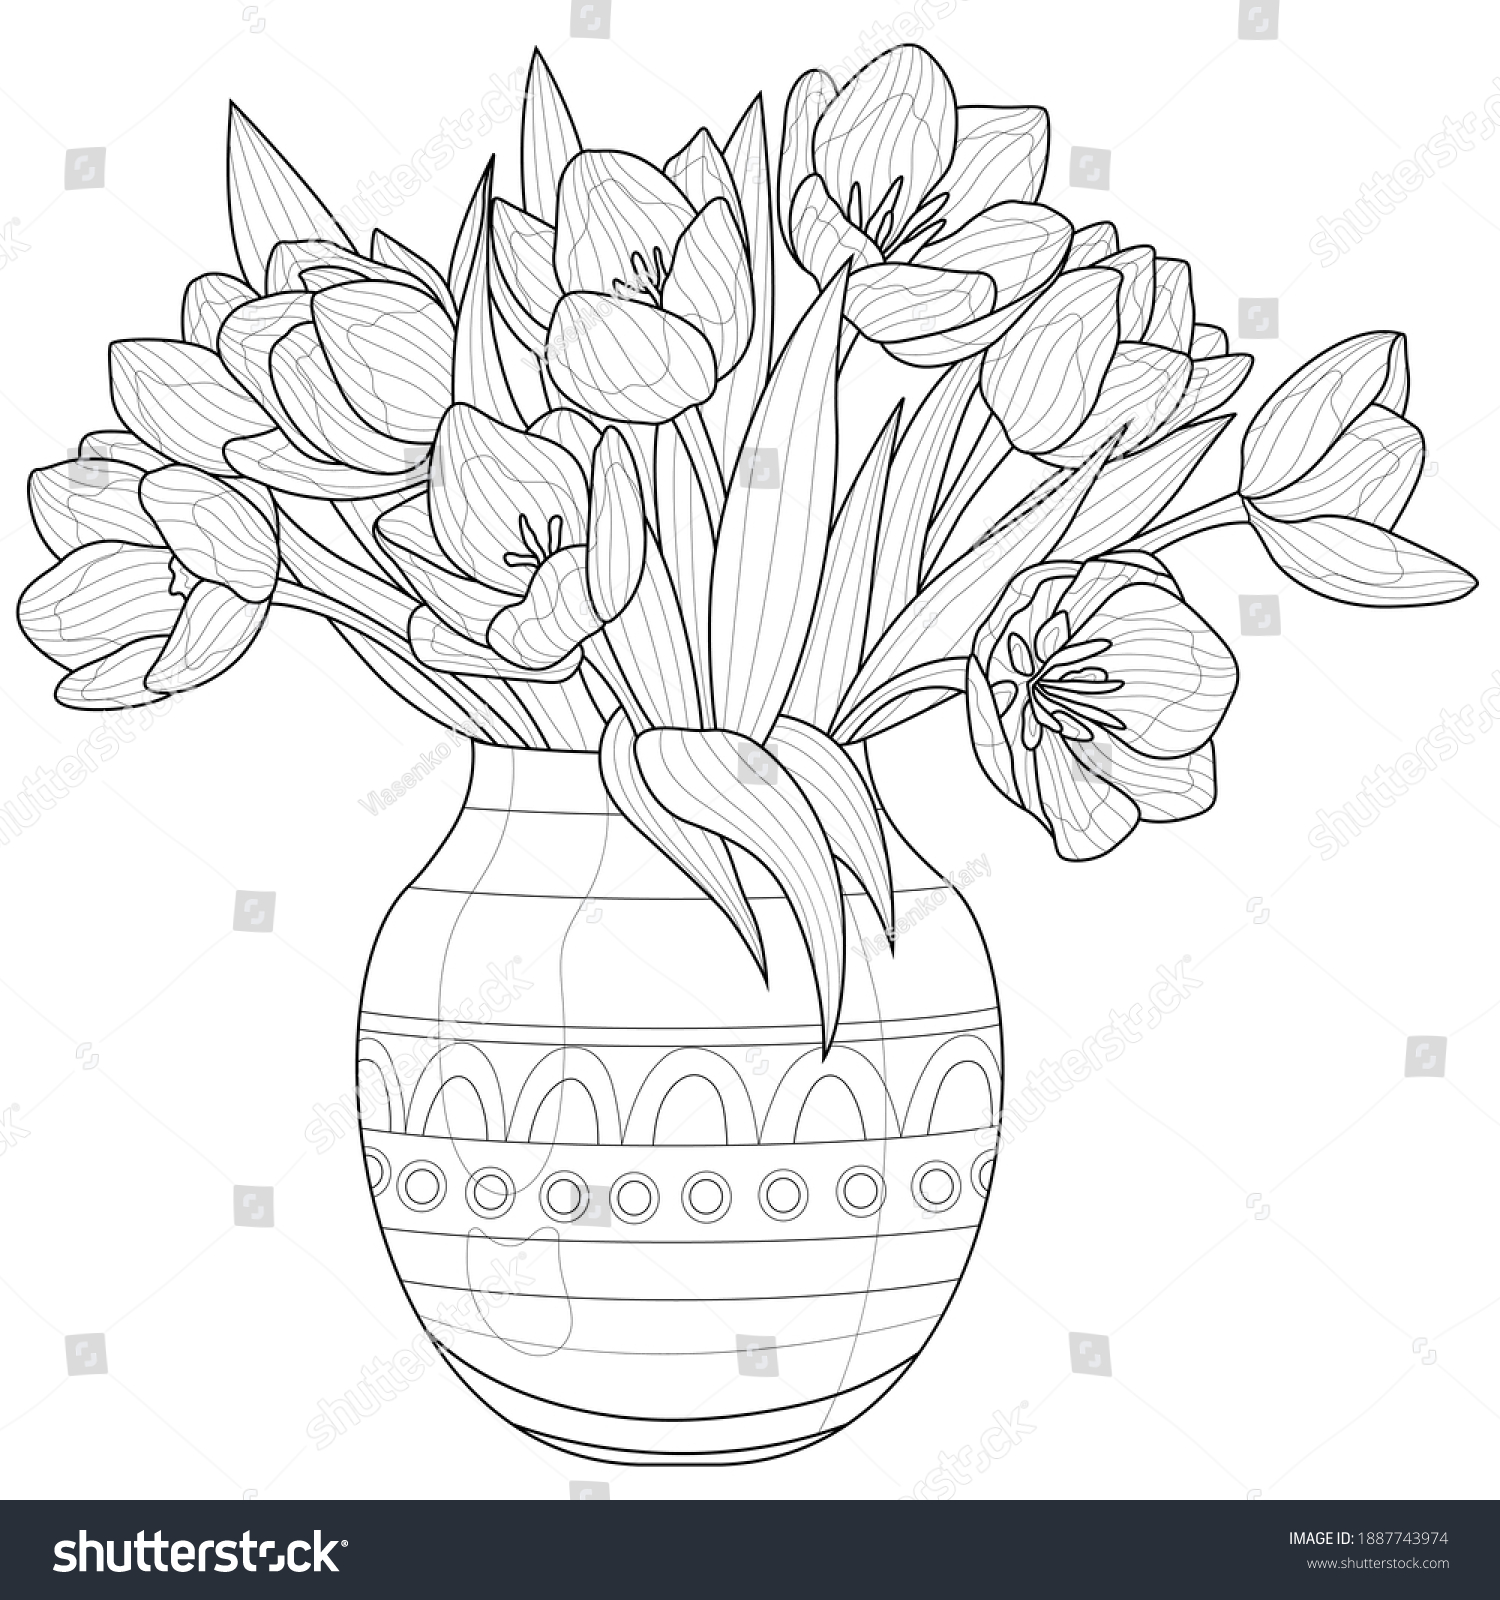 Раскраска букет тюльпанов в вазе